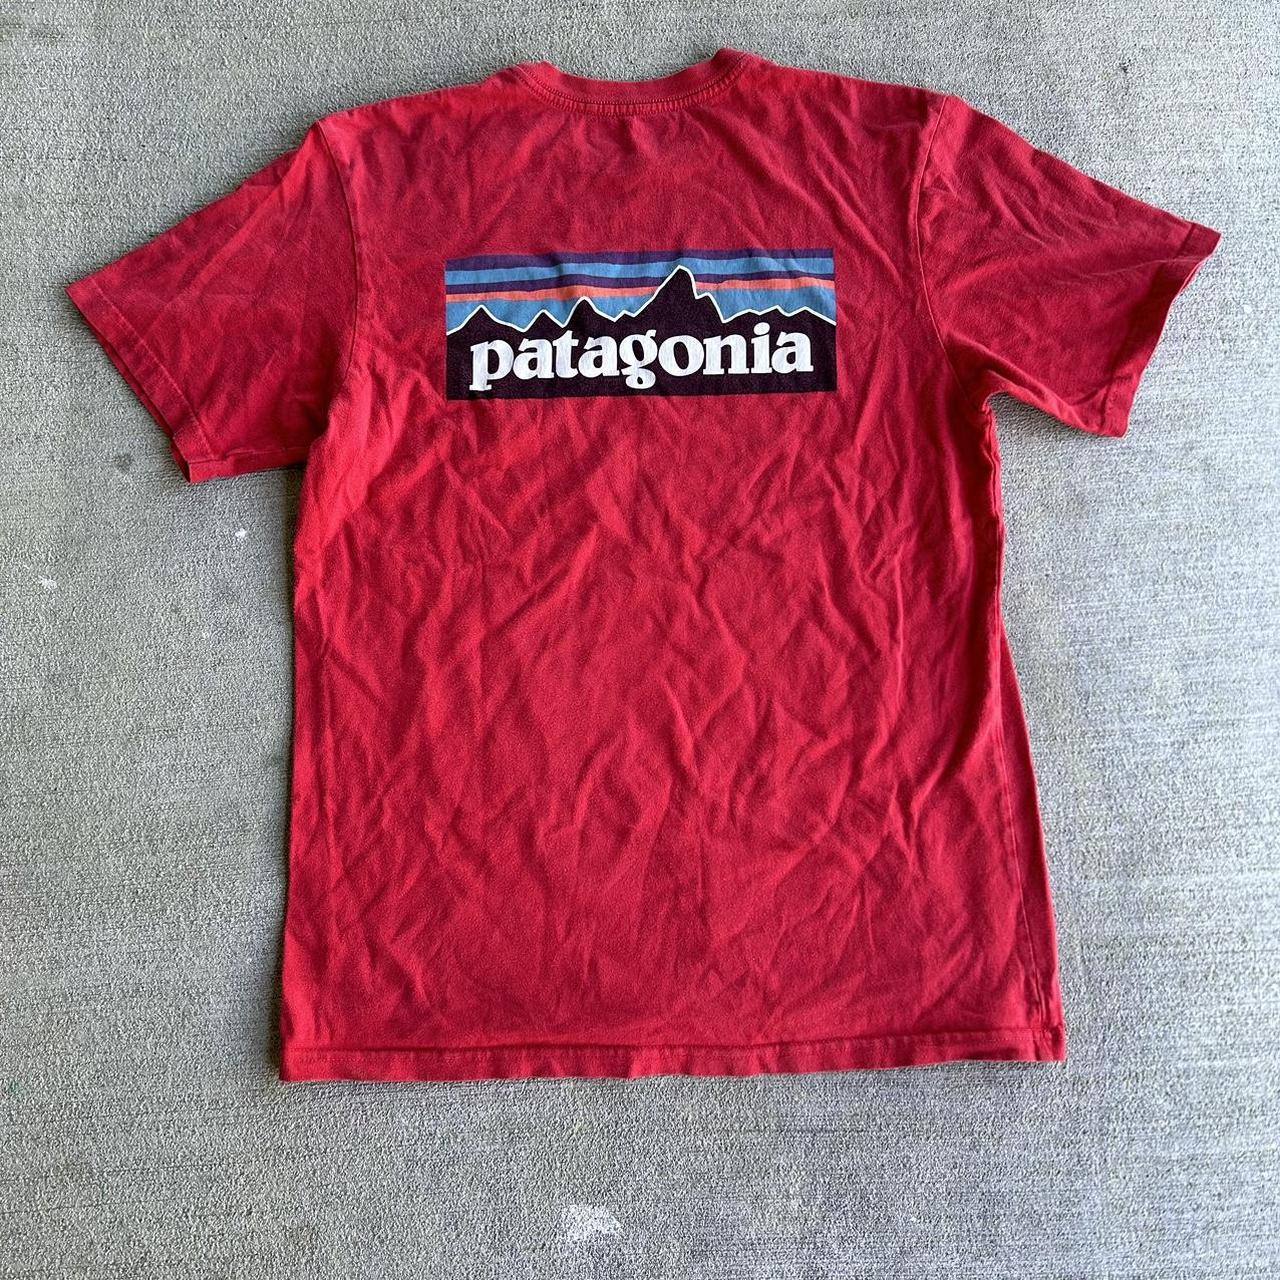 Patagonia shirt - Depop